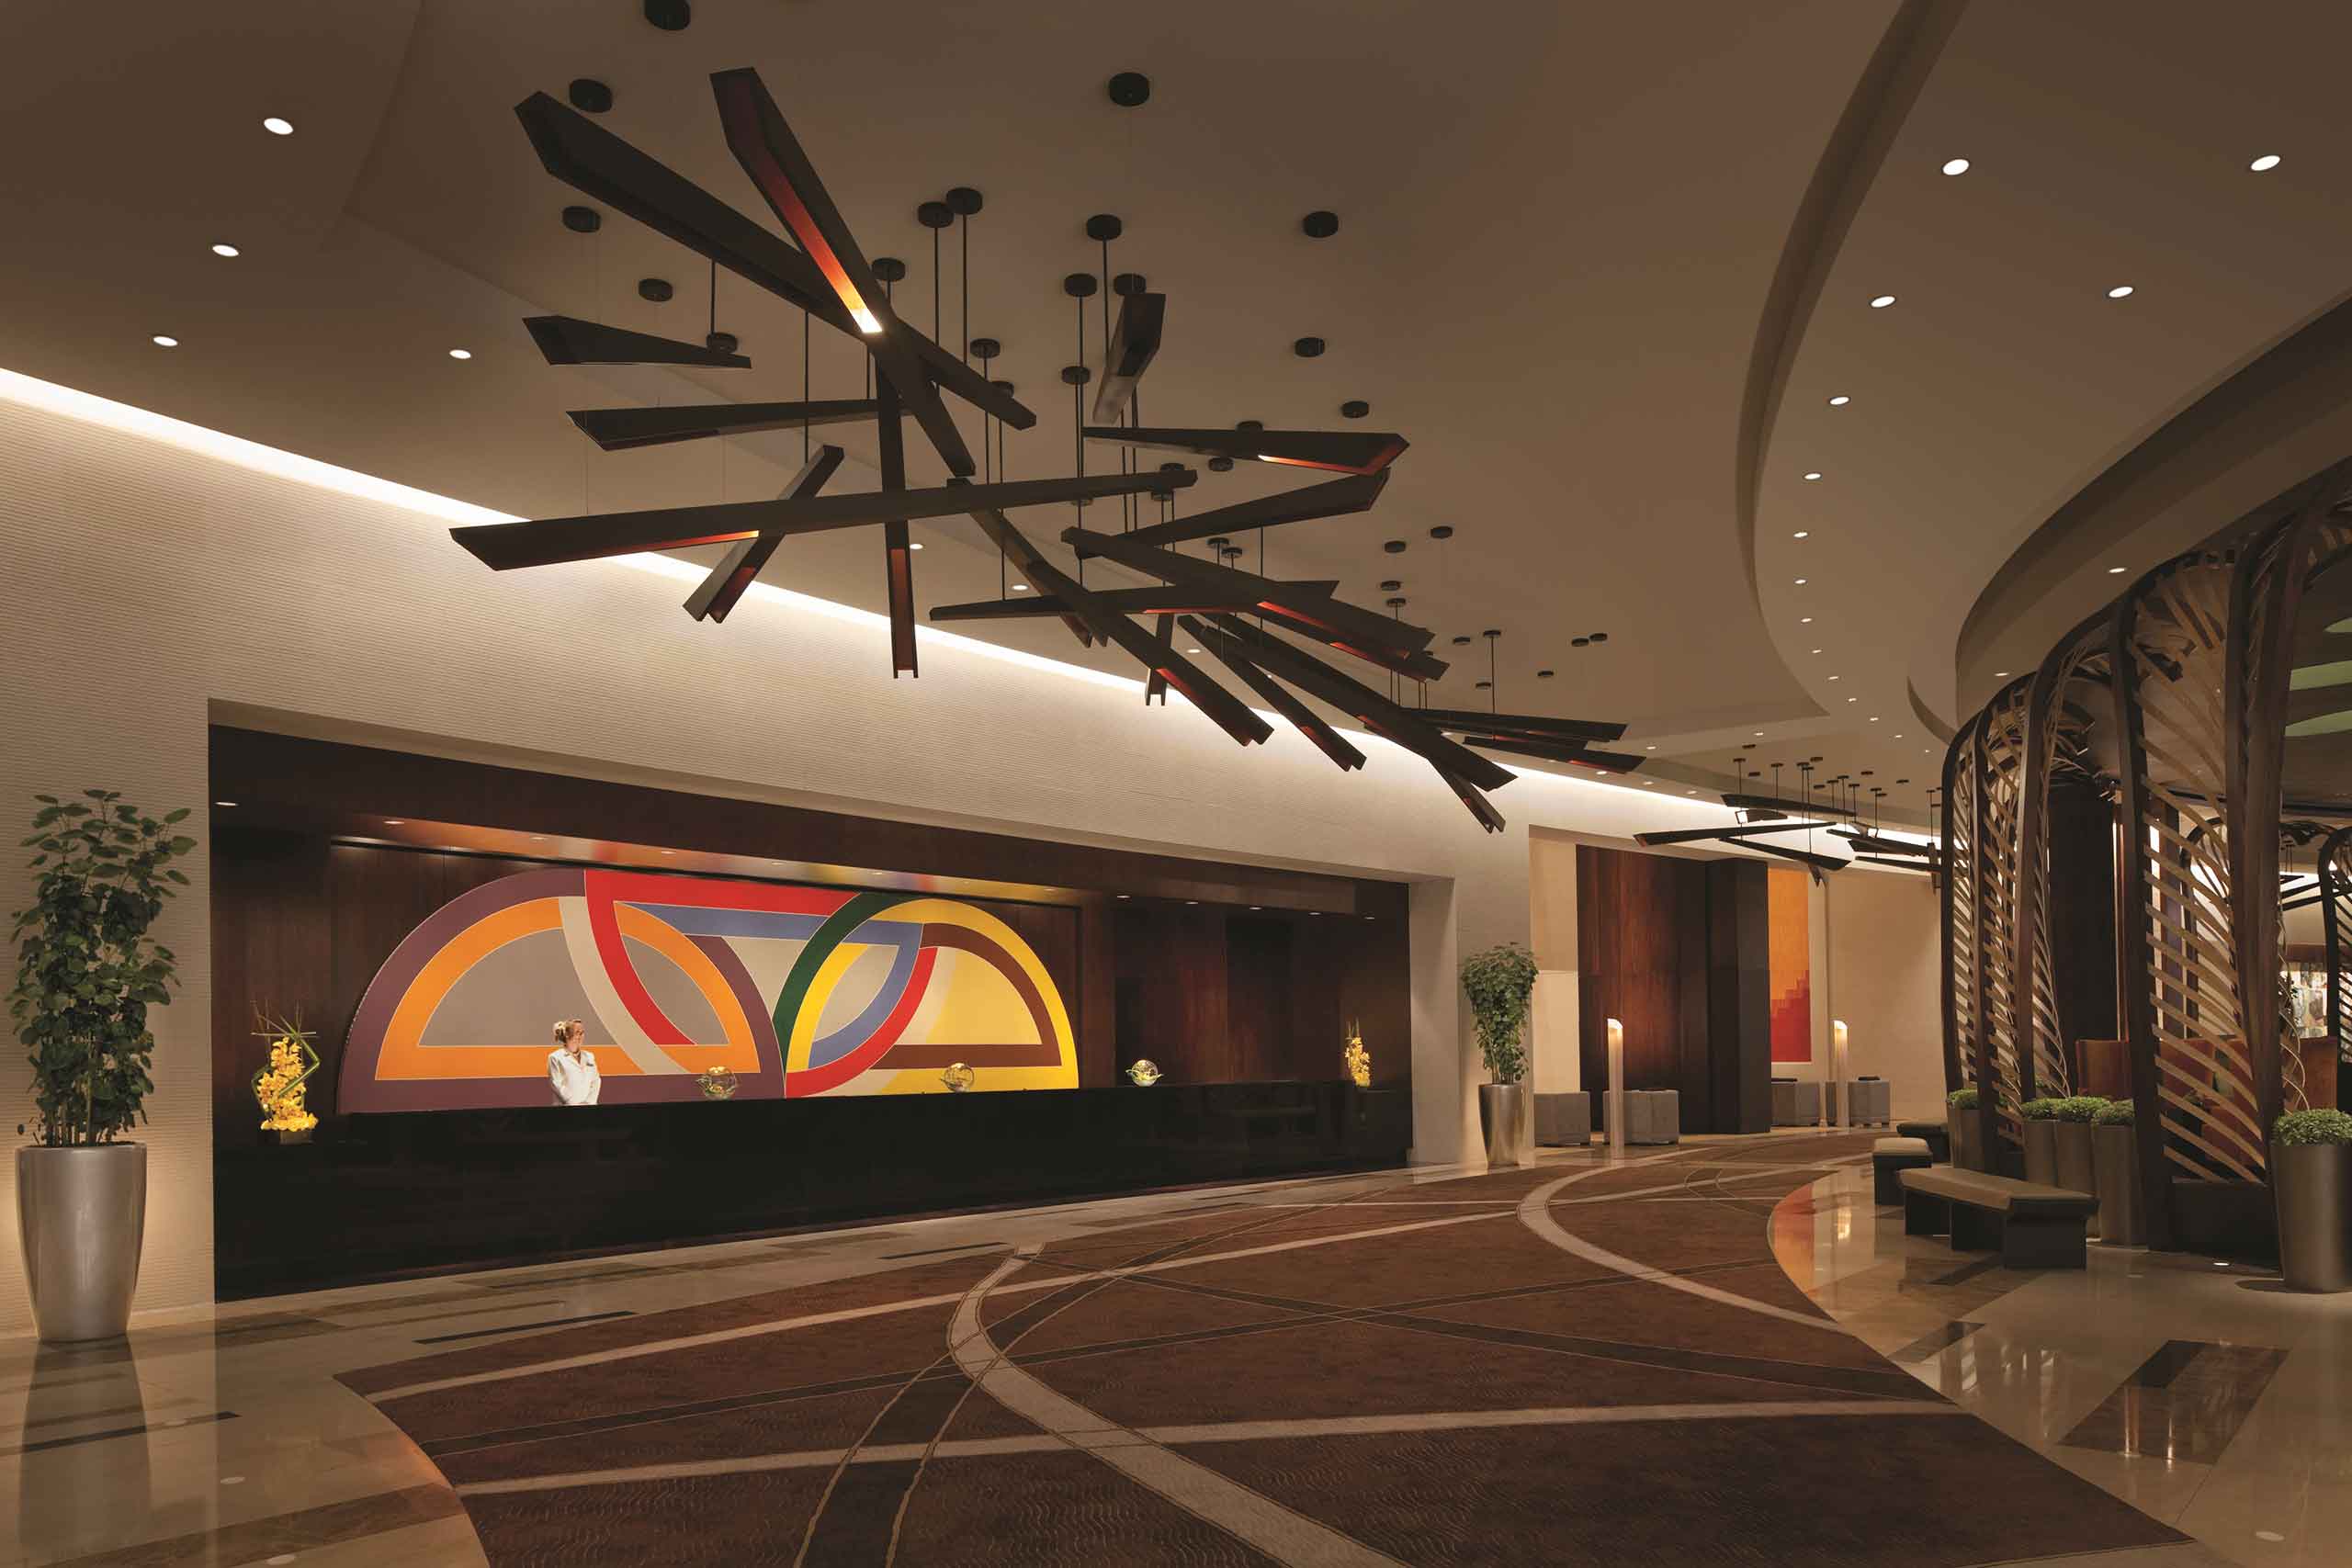 Vdara Las Vegas lobby interior